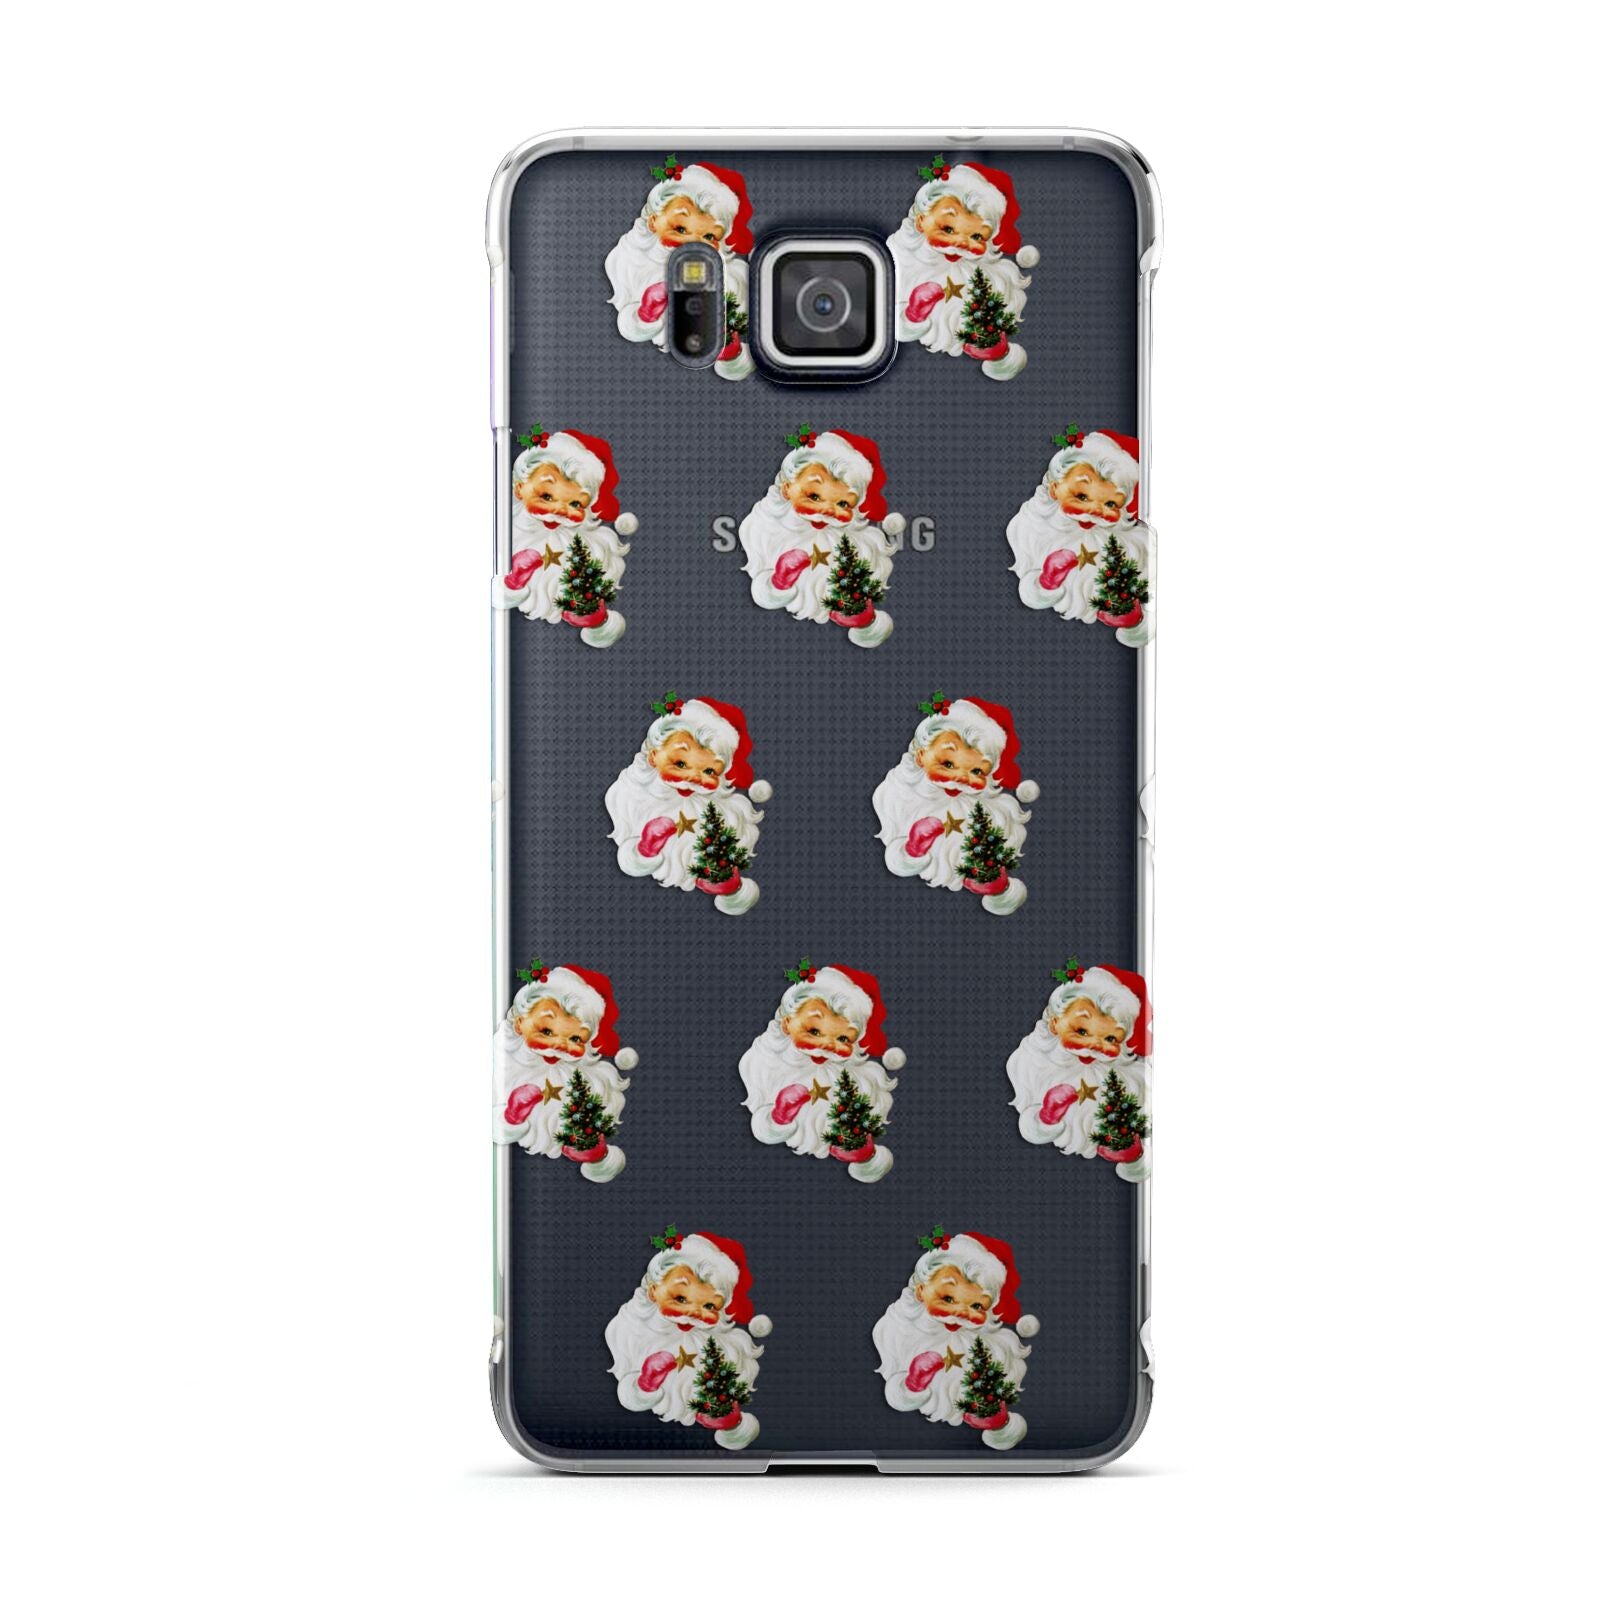 Retro Santa Face Samsung Galaxy Alpha Case